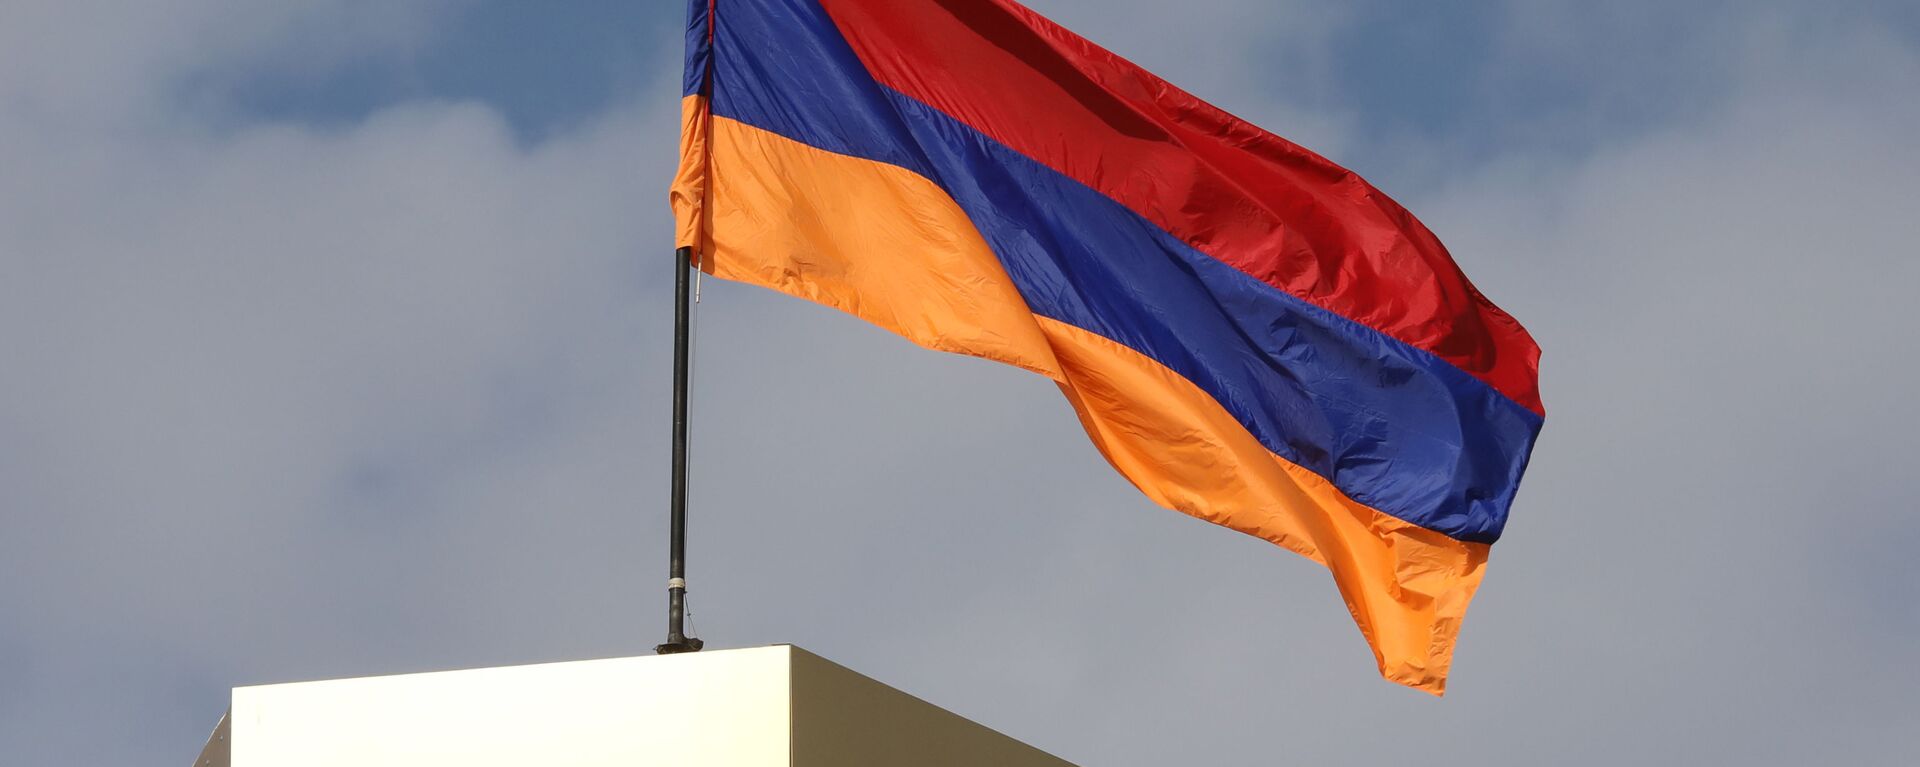 Ermenistan bayrak - Ermenistan bayrağı - Sputnik Türkiye, 1920, 29.03.2021